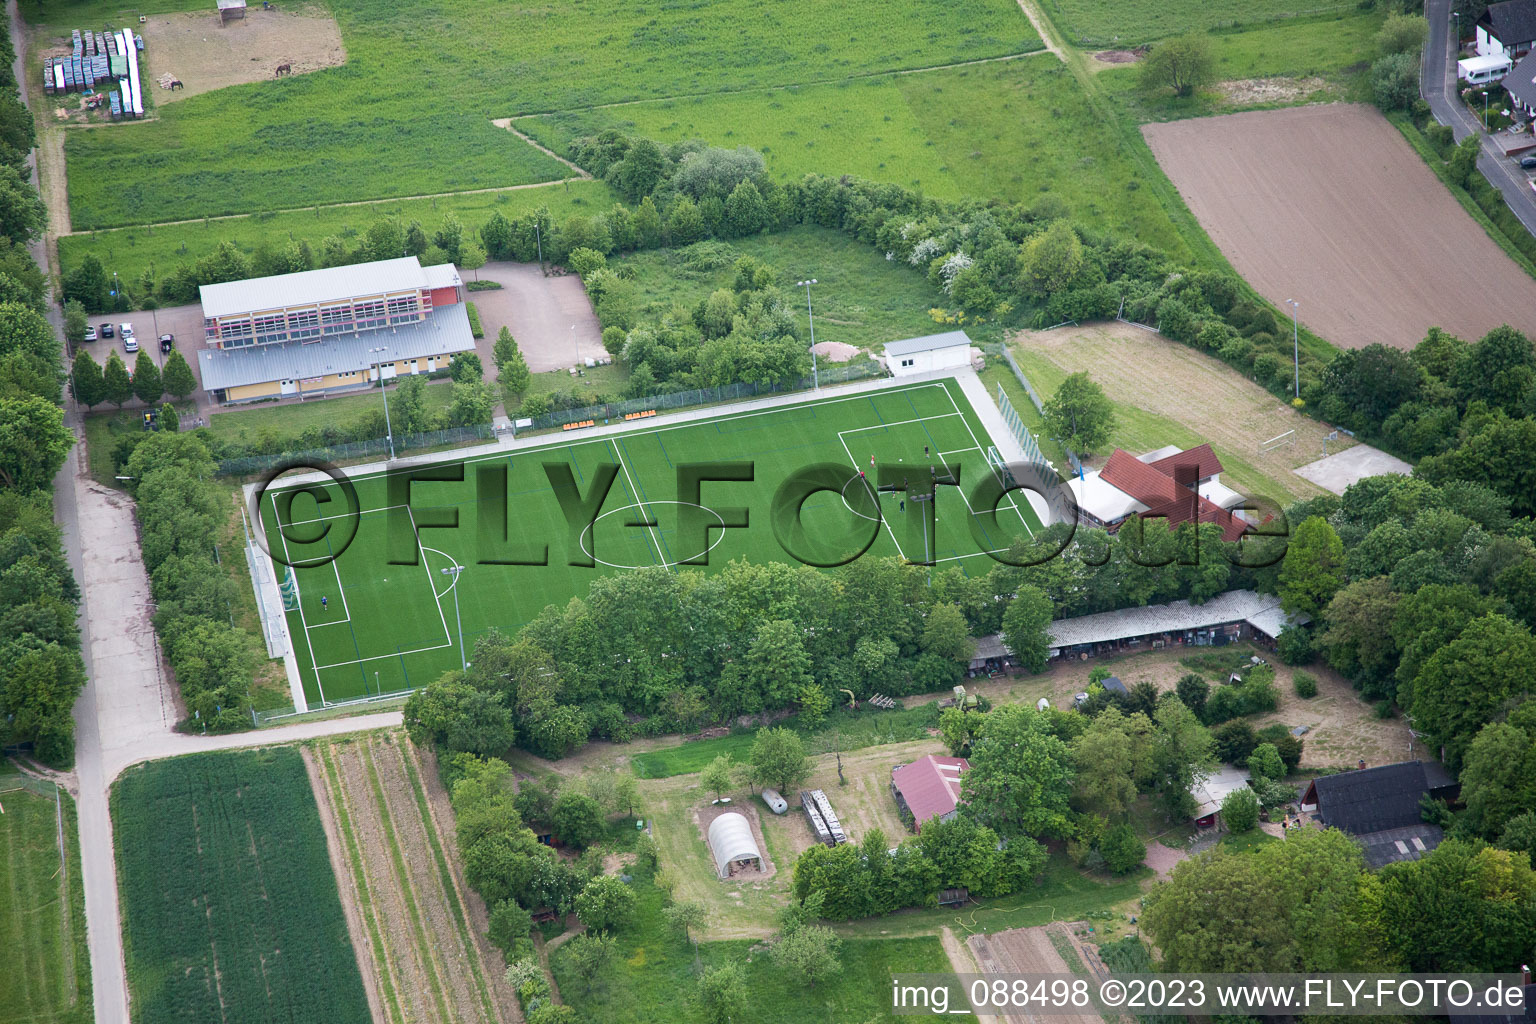 Vue aérienne de Terrain de sport à Dexheim dans le département Rhénanie-Palatinat, Allemagne